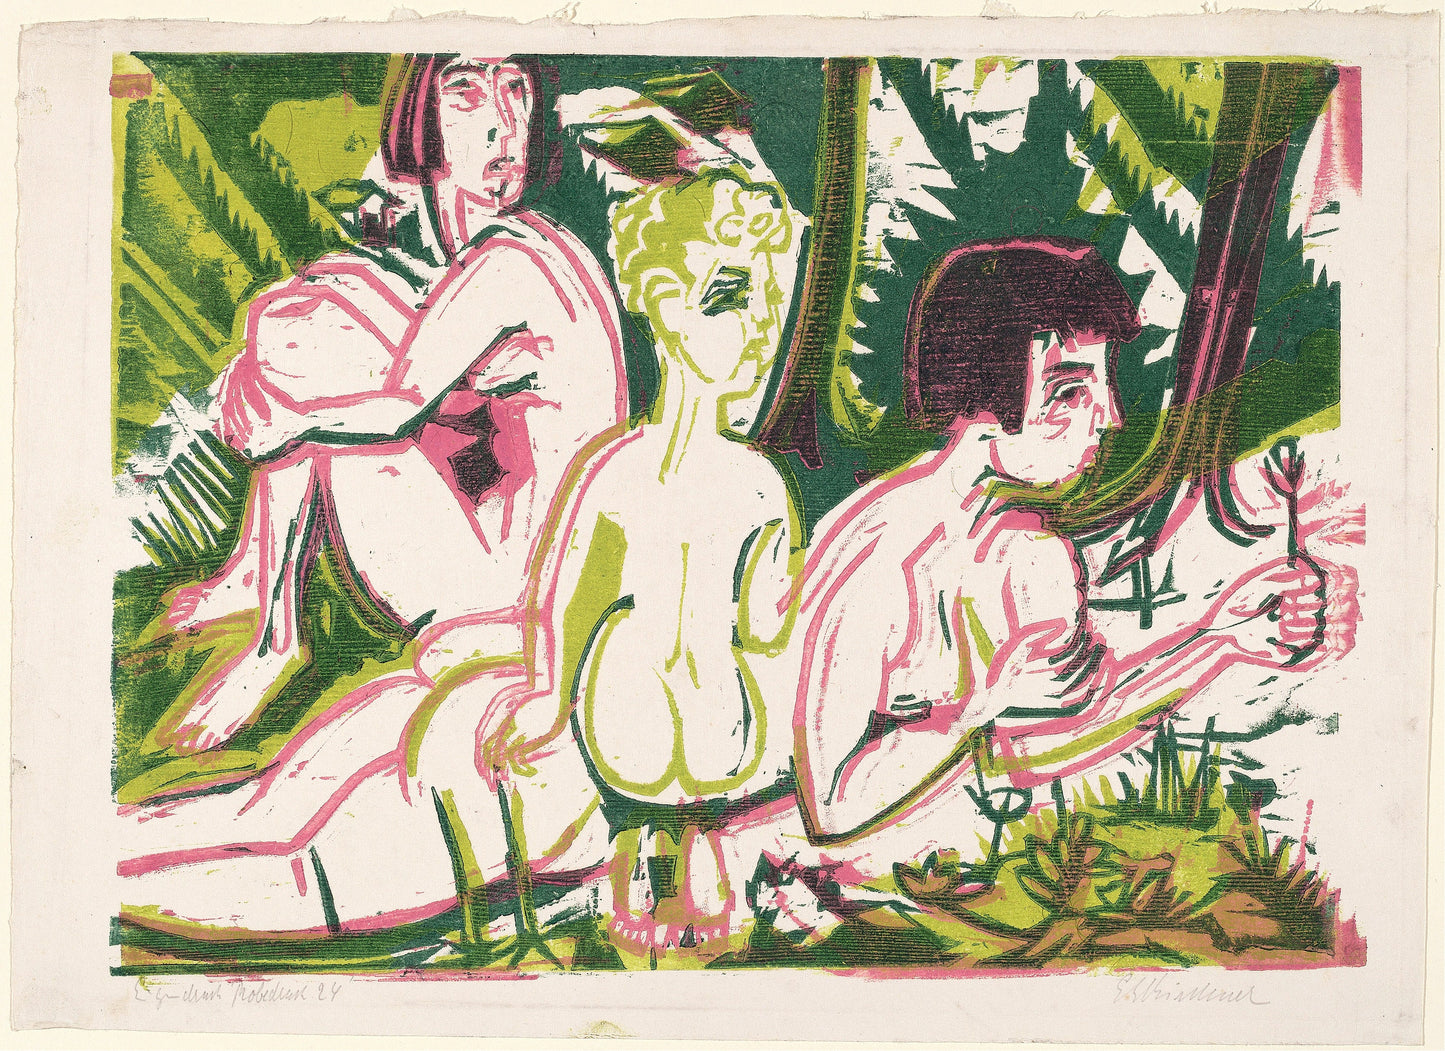 Ernst Ludwig Kirchner Expressionist Artworks Set 2 [25 Images]